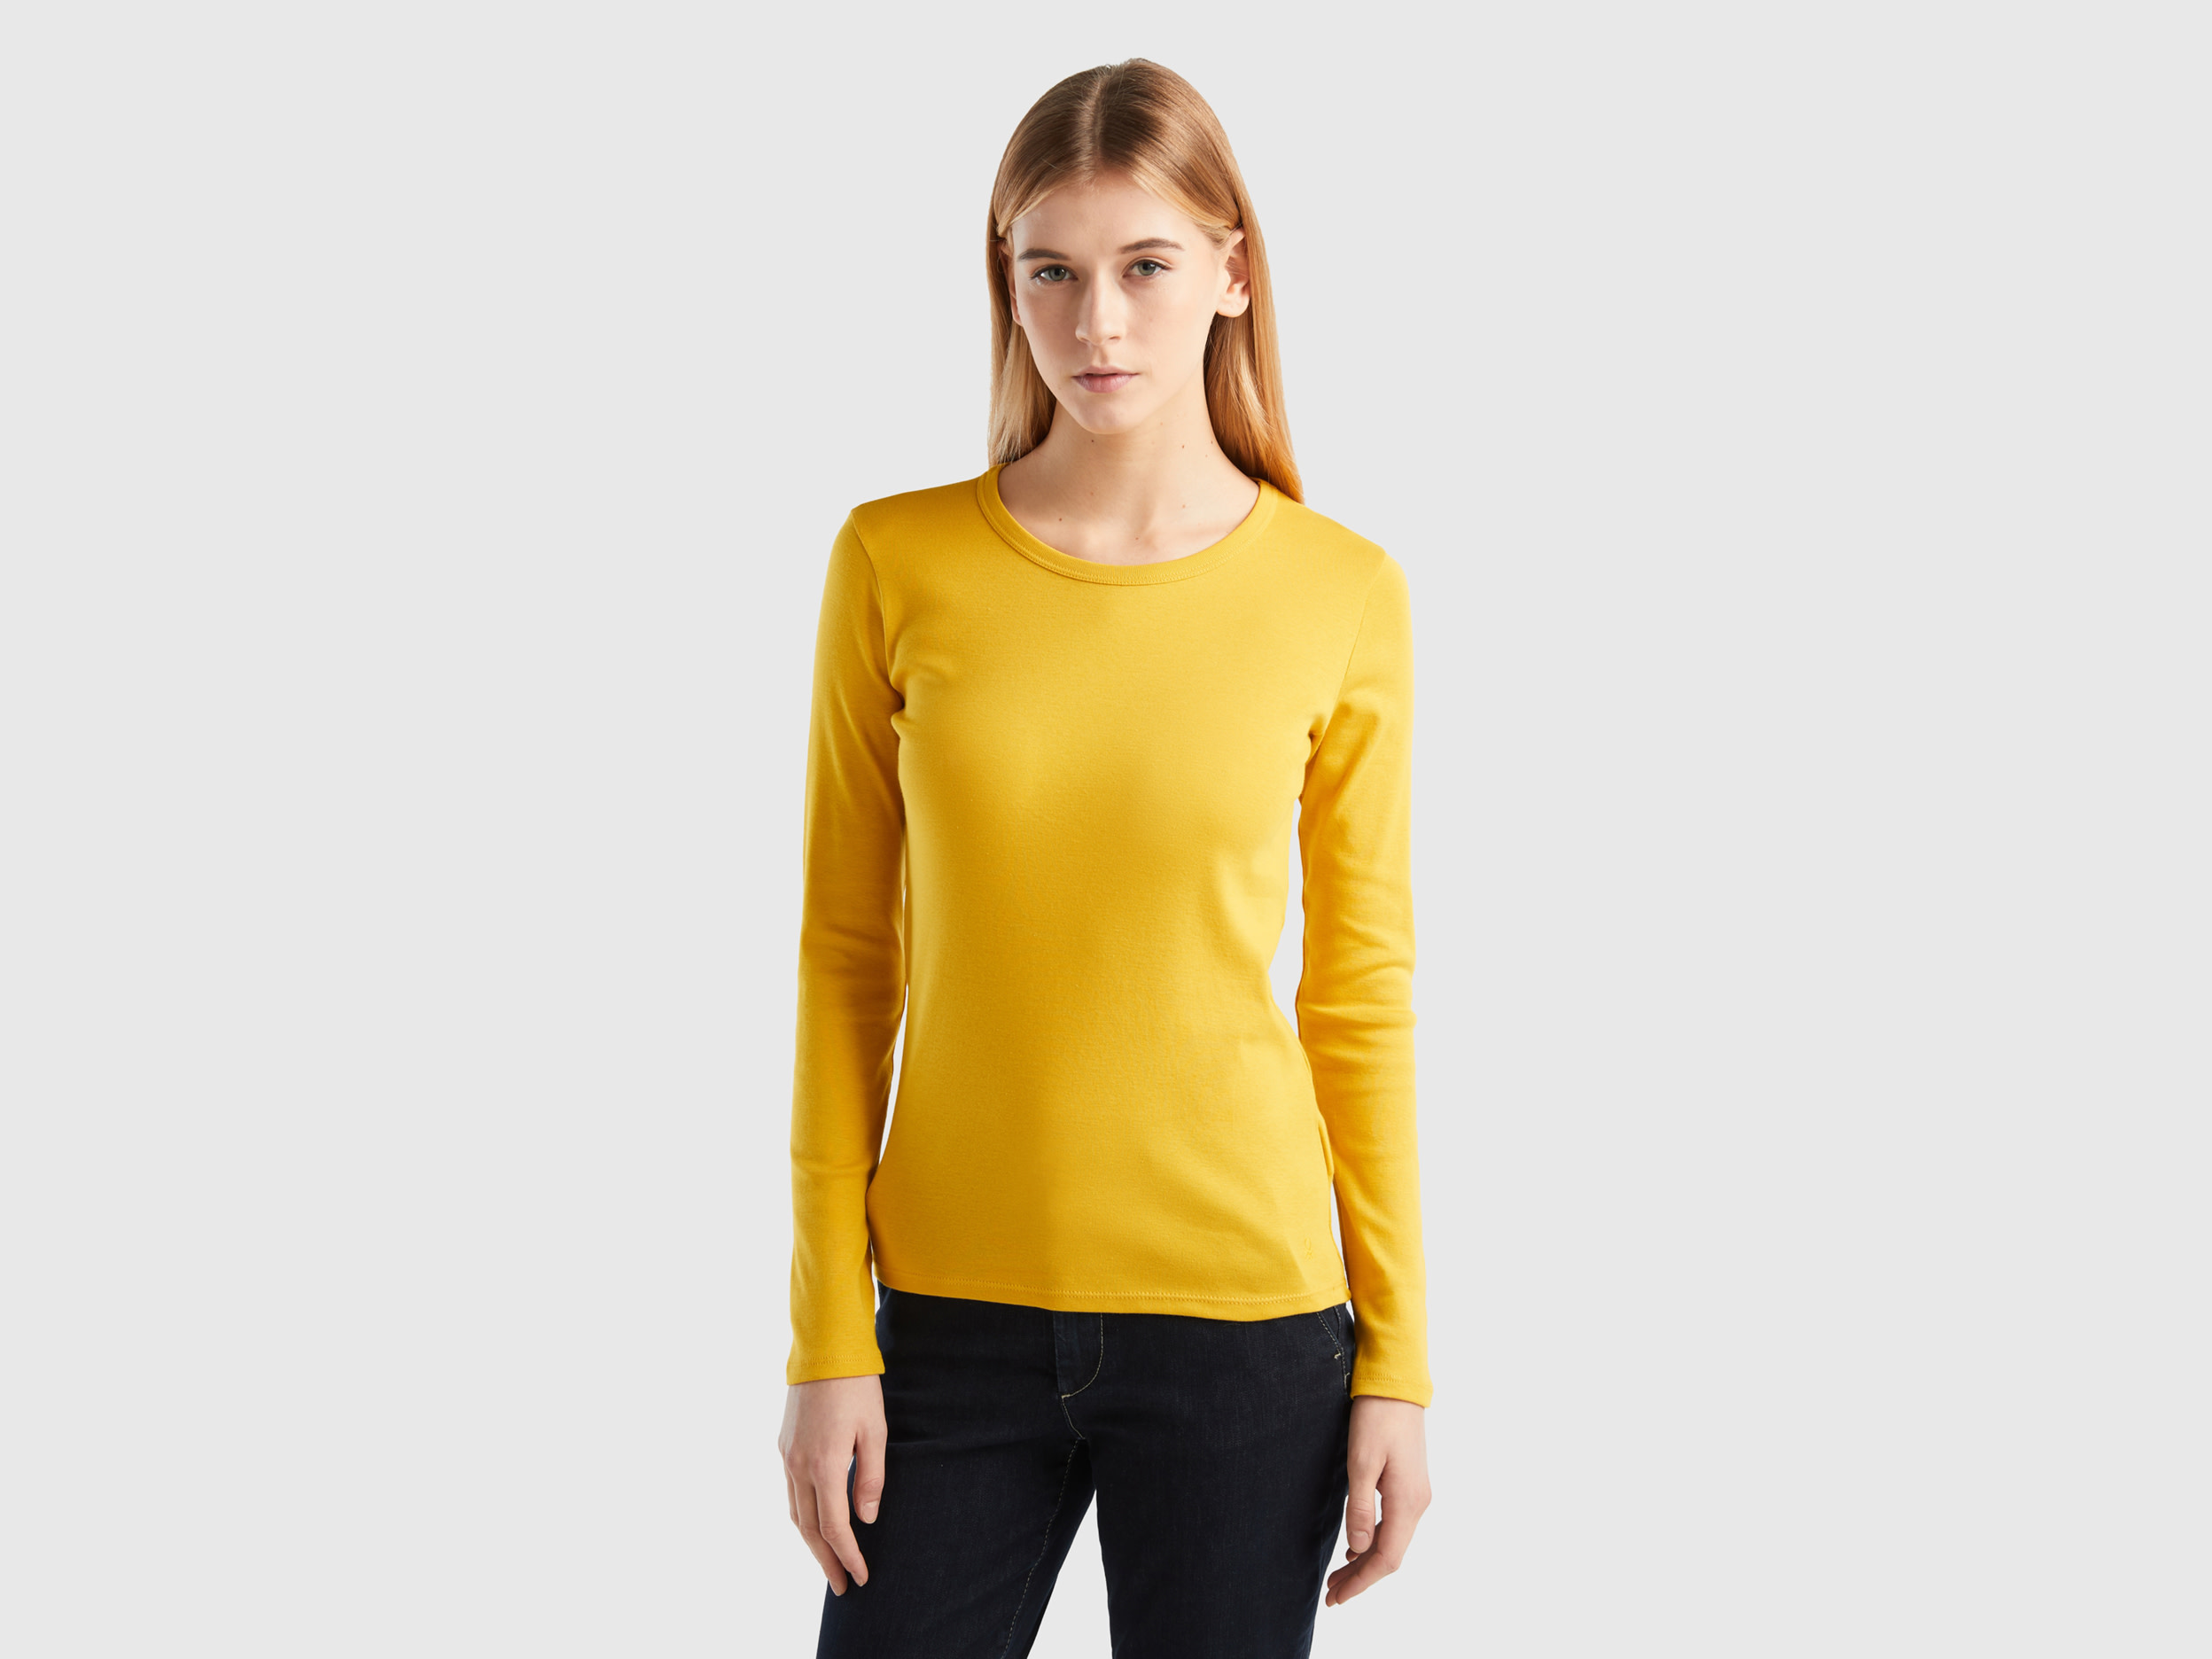 Benetton, Long Sleeve Pure Cotton T-shirt, size XXS, Yellow, Women